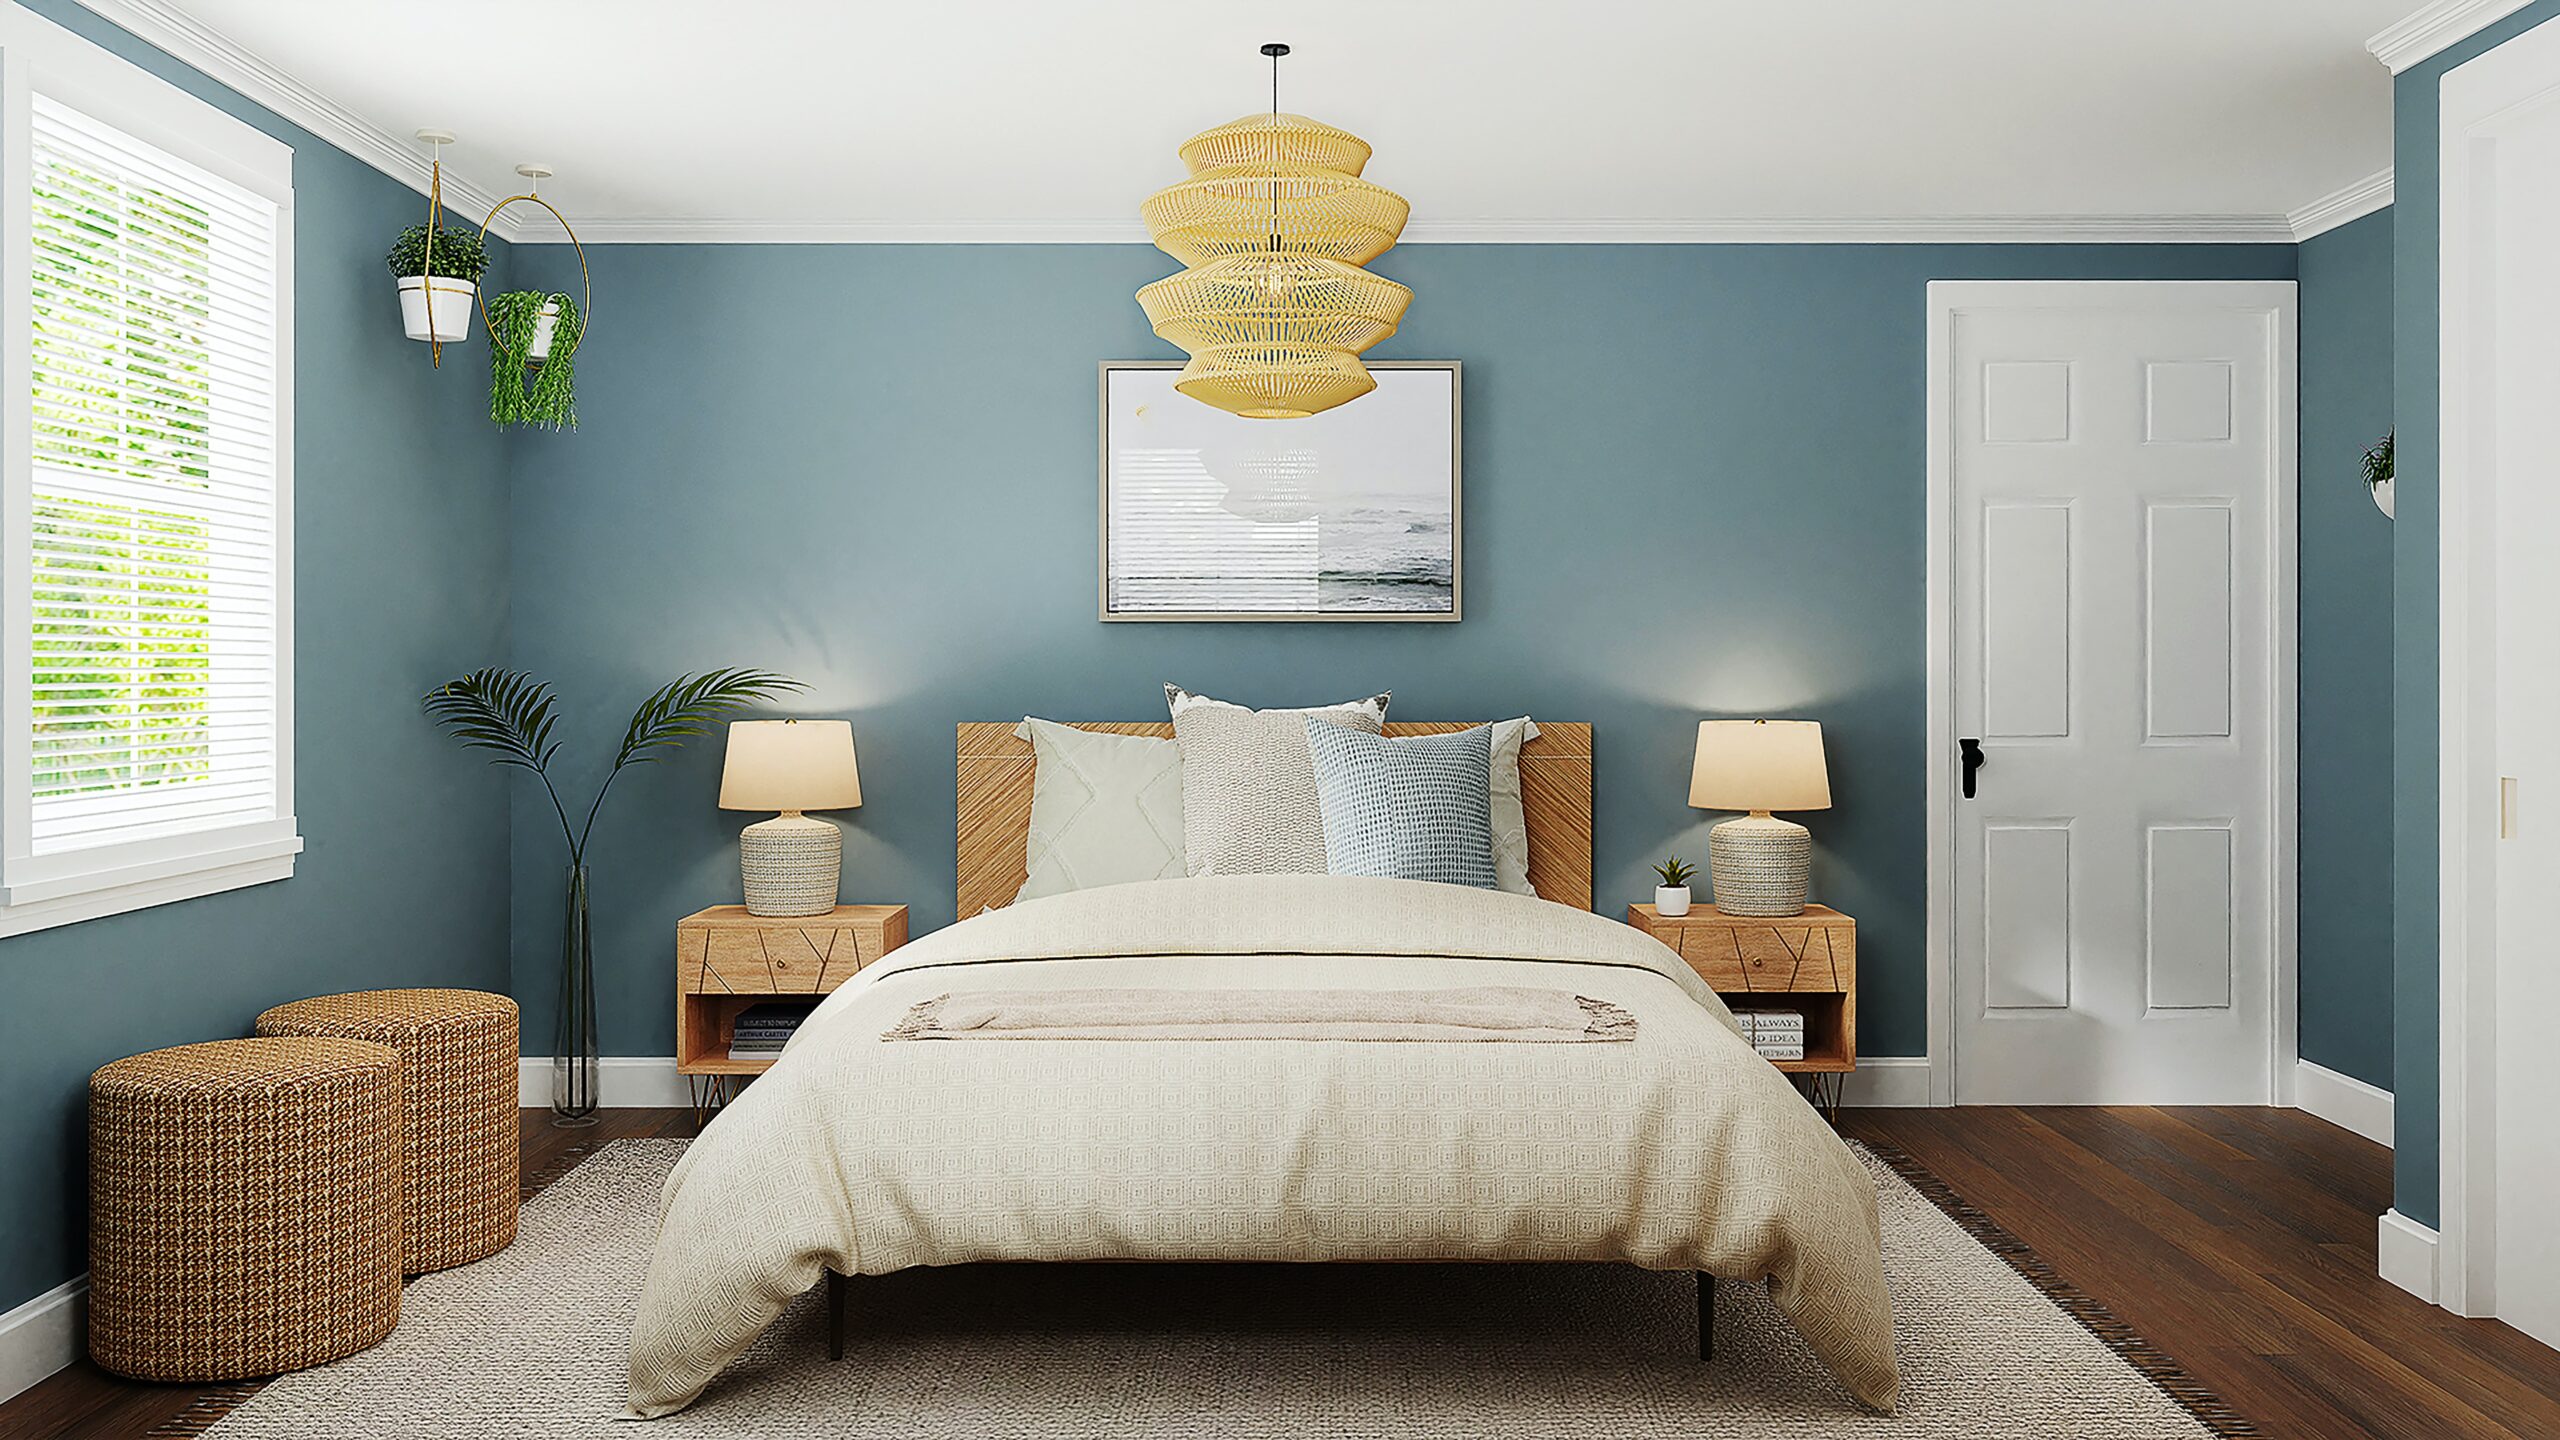 Verhandeling Absoluut Waarneembaar Lamp voor plafond slaapkamer - Interieur Inspiratie